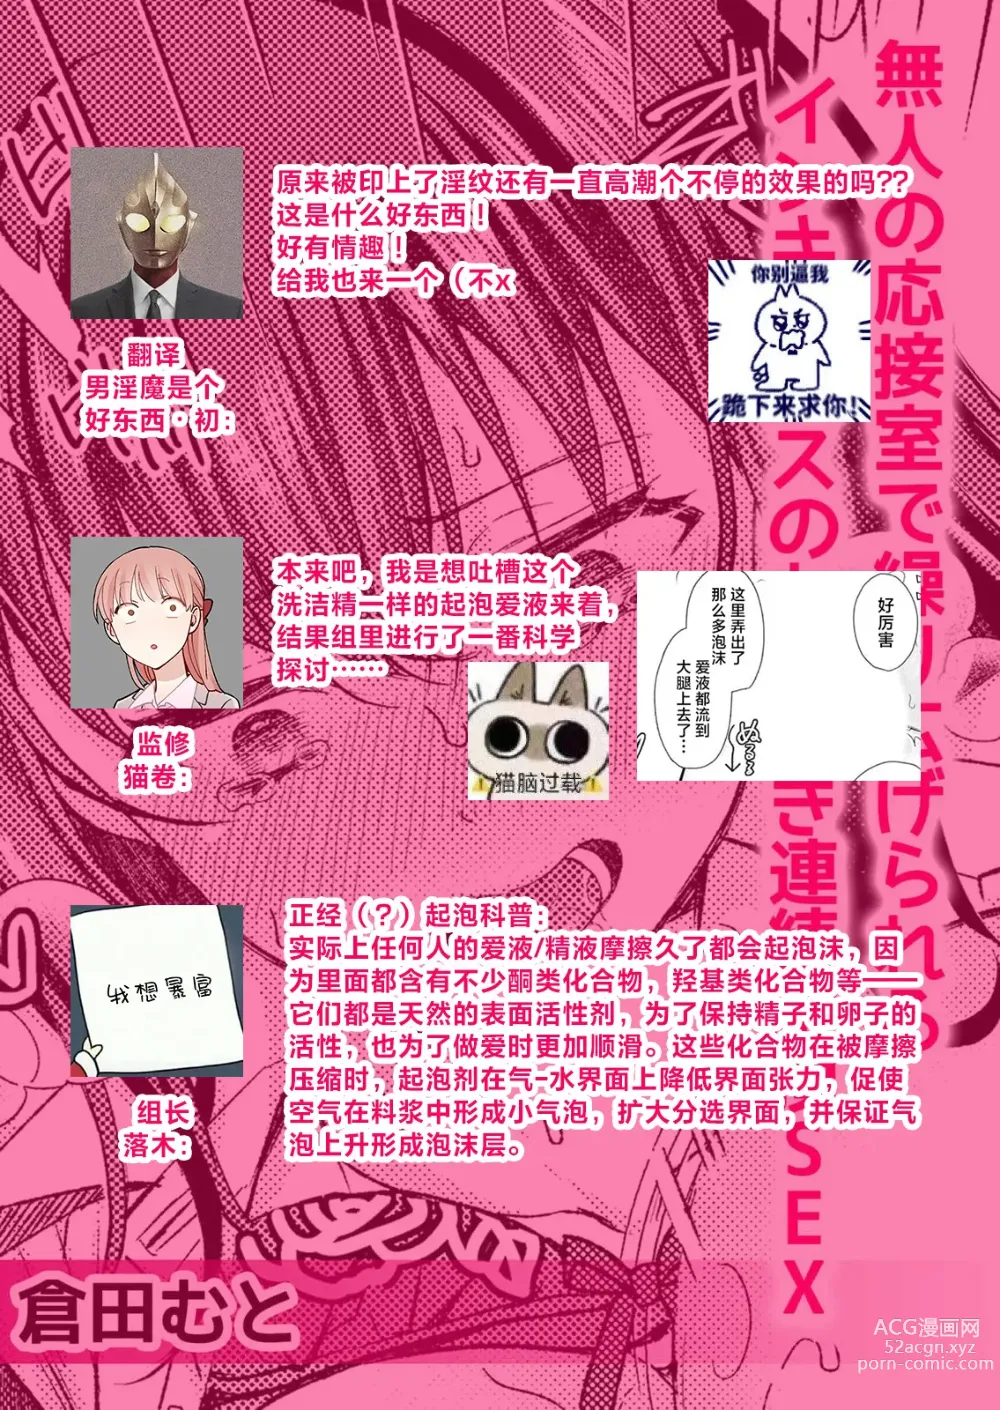 Page 11 of manga 在空无一人的接待室内被他肏开因受到淫魔的惩罚而连续高潮不止的SEX